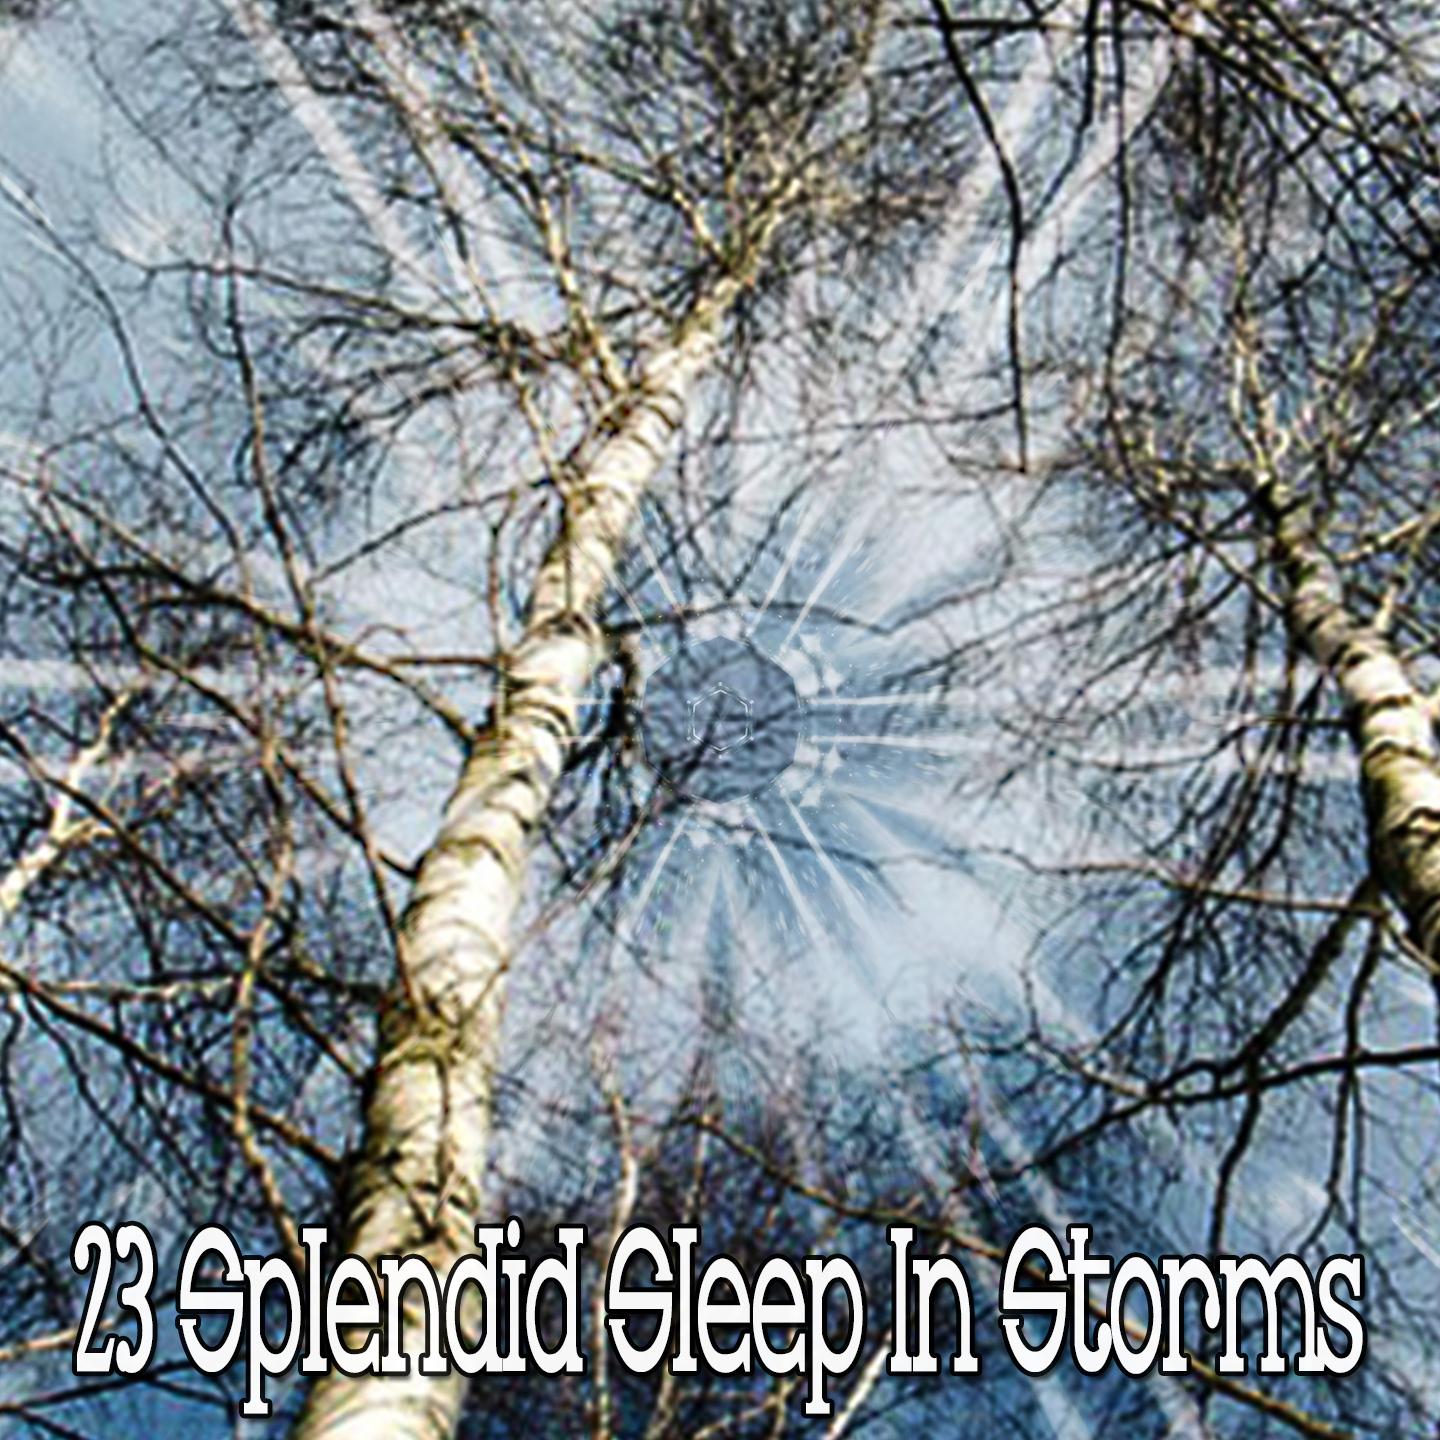 23 Splendid Sleep in Storms